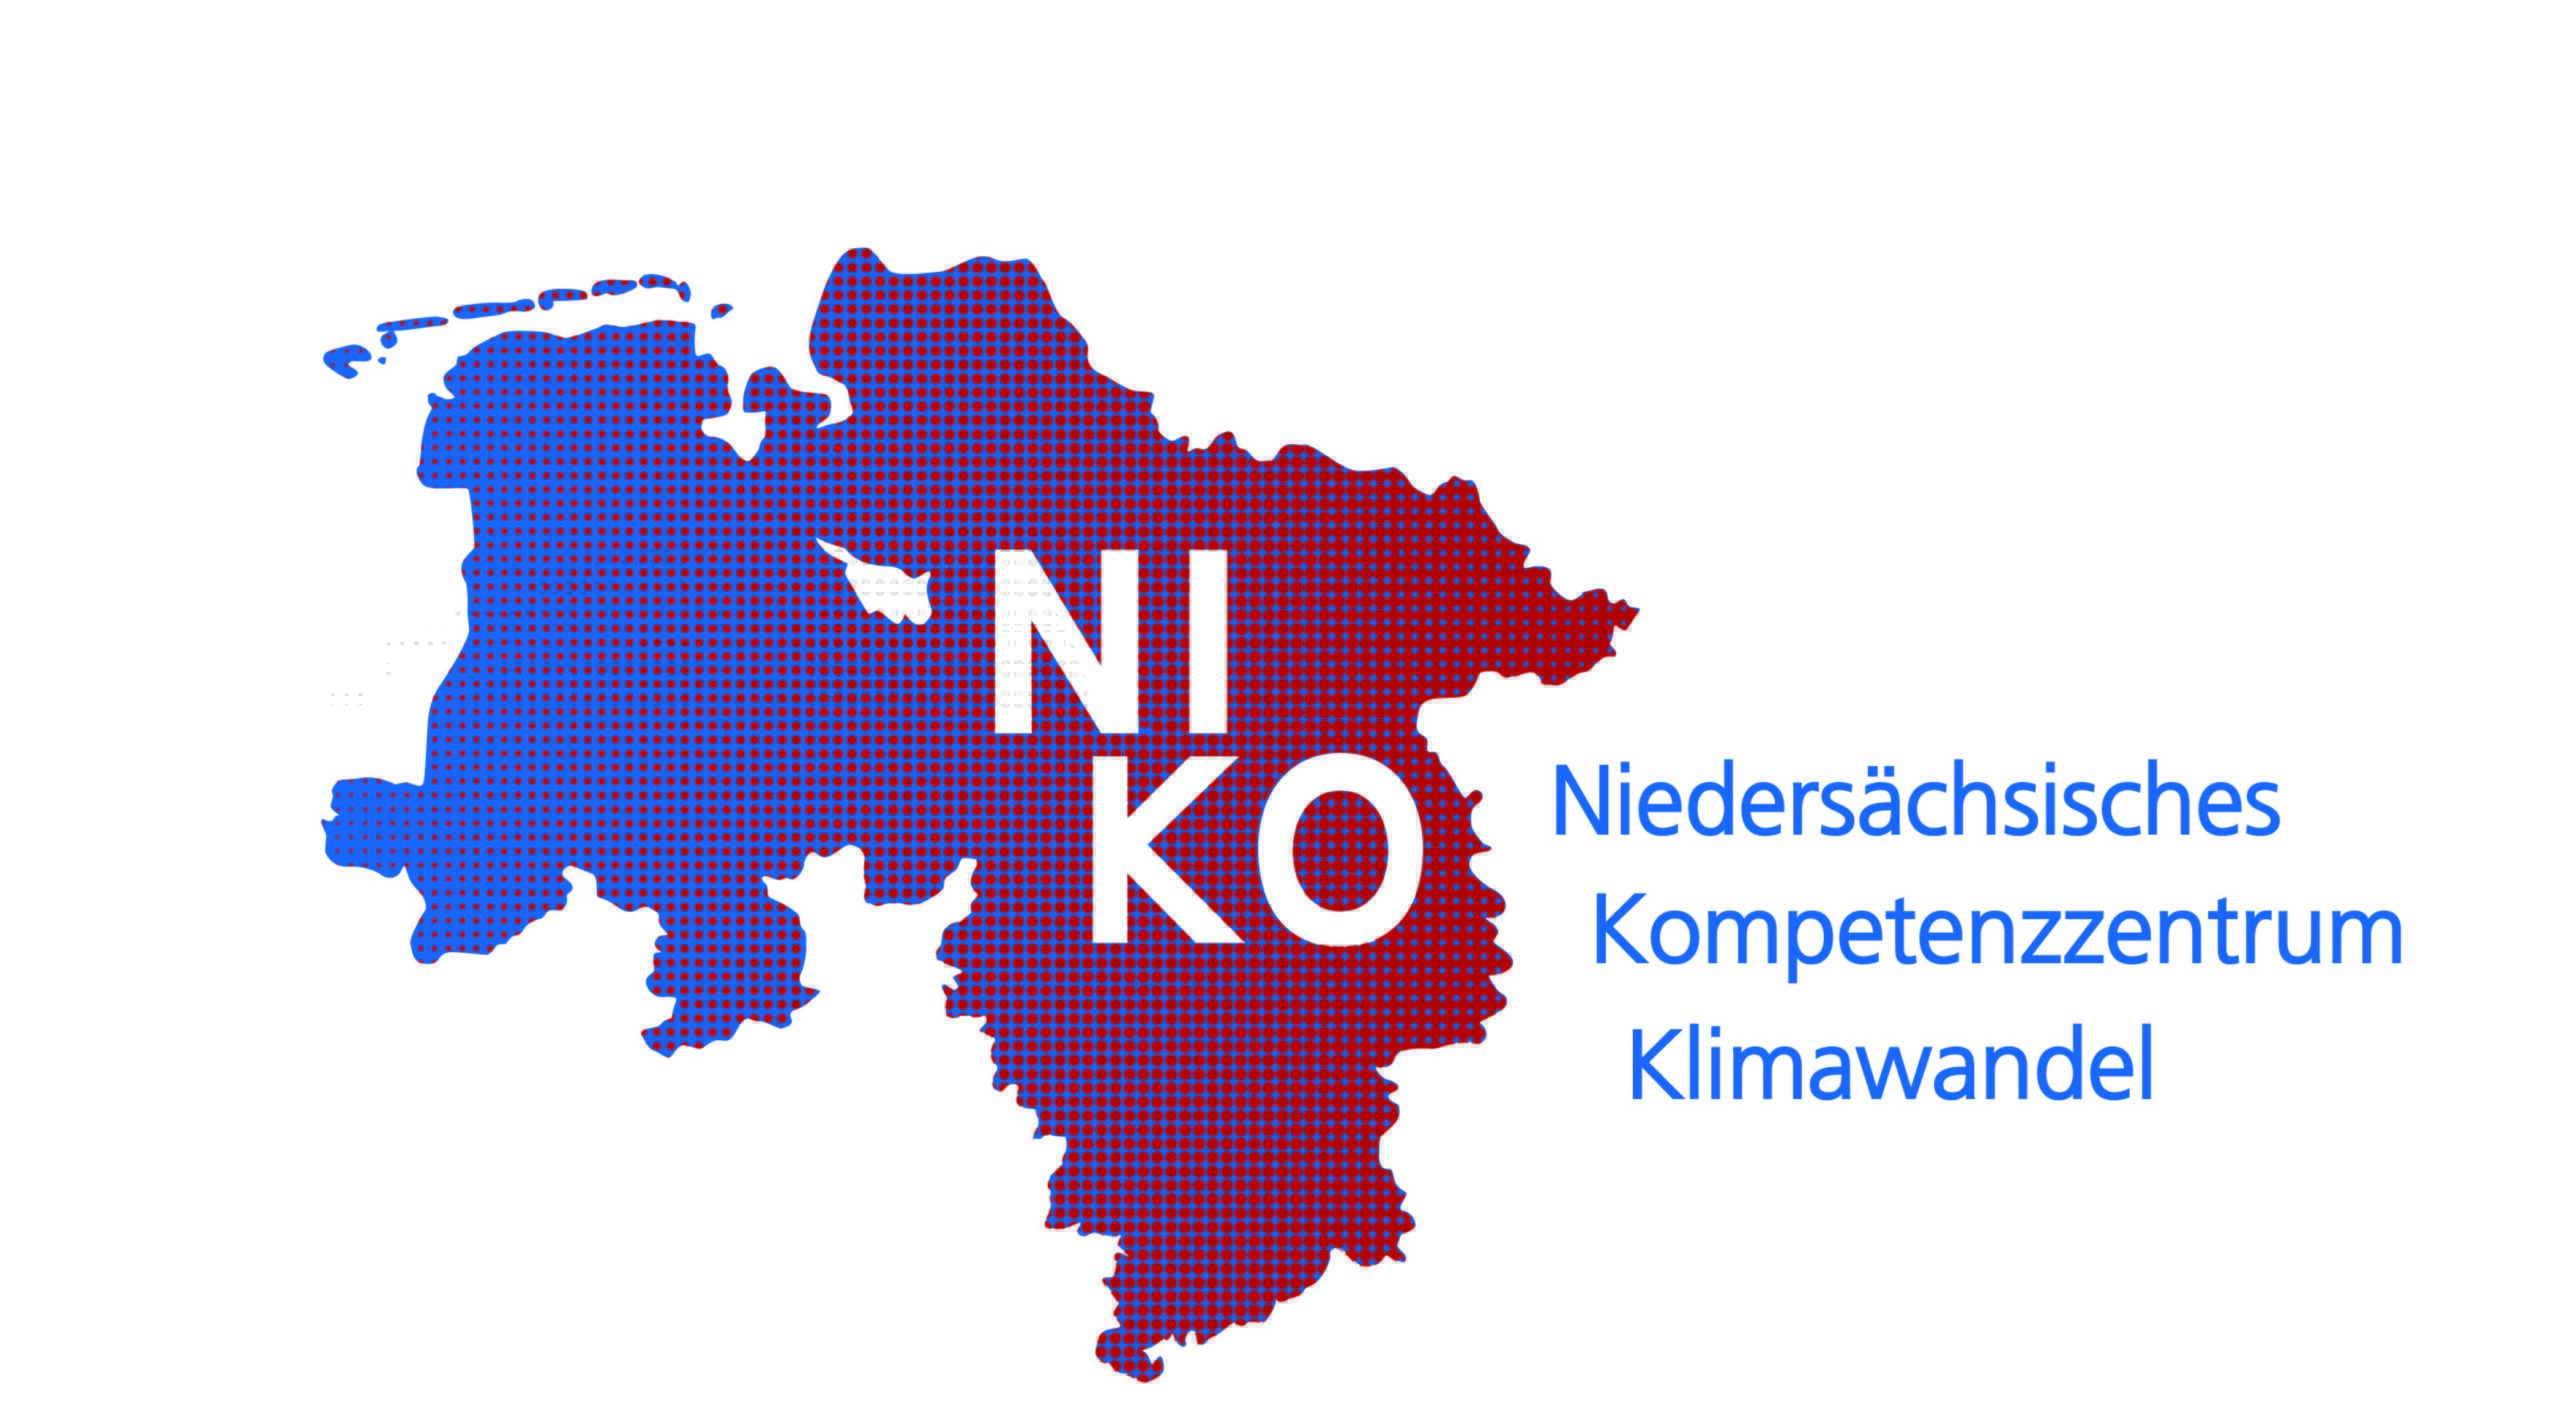 Das Logo zeigt eine graphische Darstellung von Niedersachsen in blau-roter Farbe mit dem Schritzug NIKO zu sehen